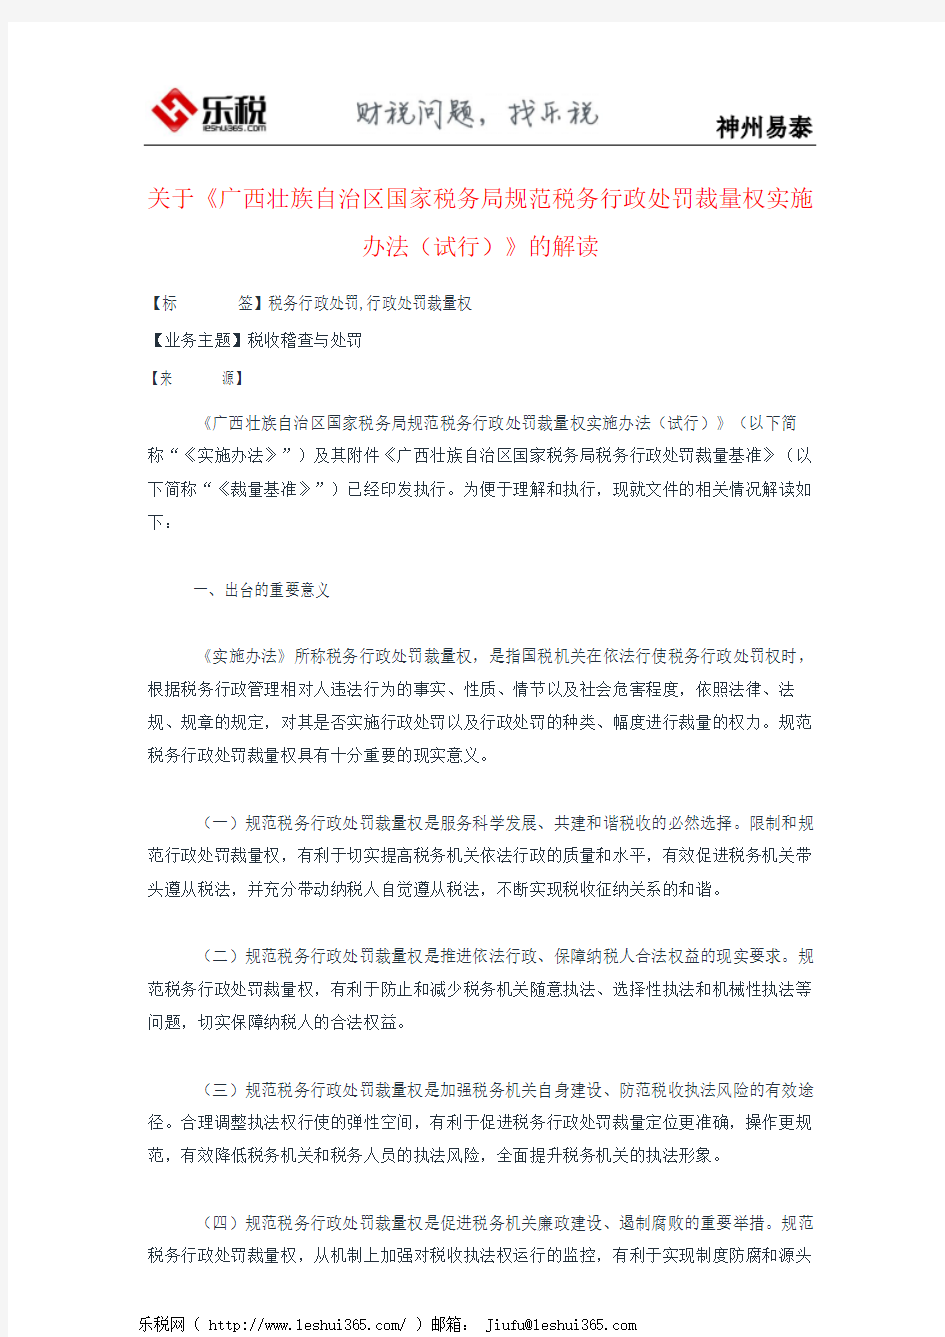 关于《广西壮族自治区国家税务局规范税务行政处罚裁量权实施办法